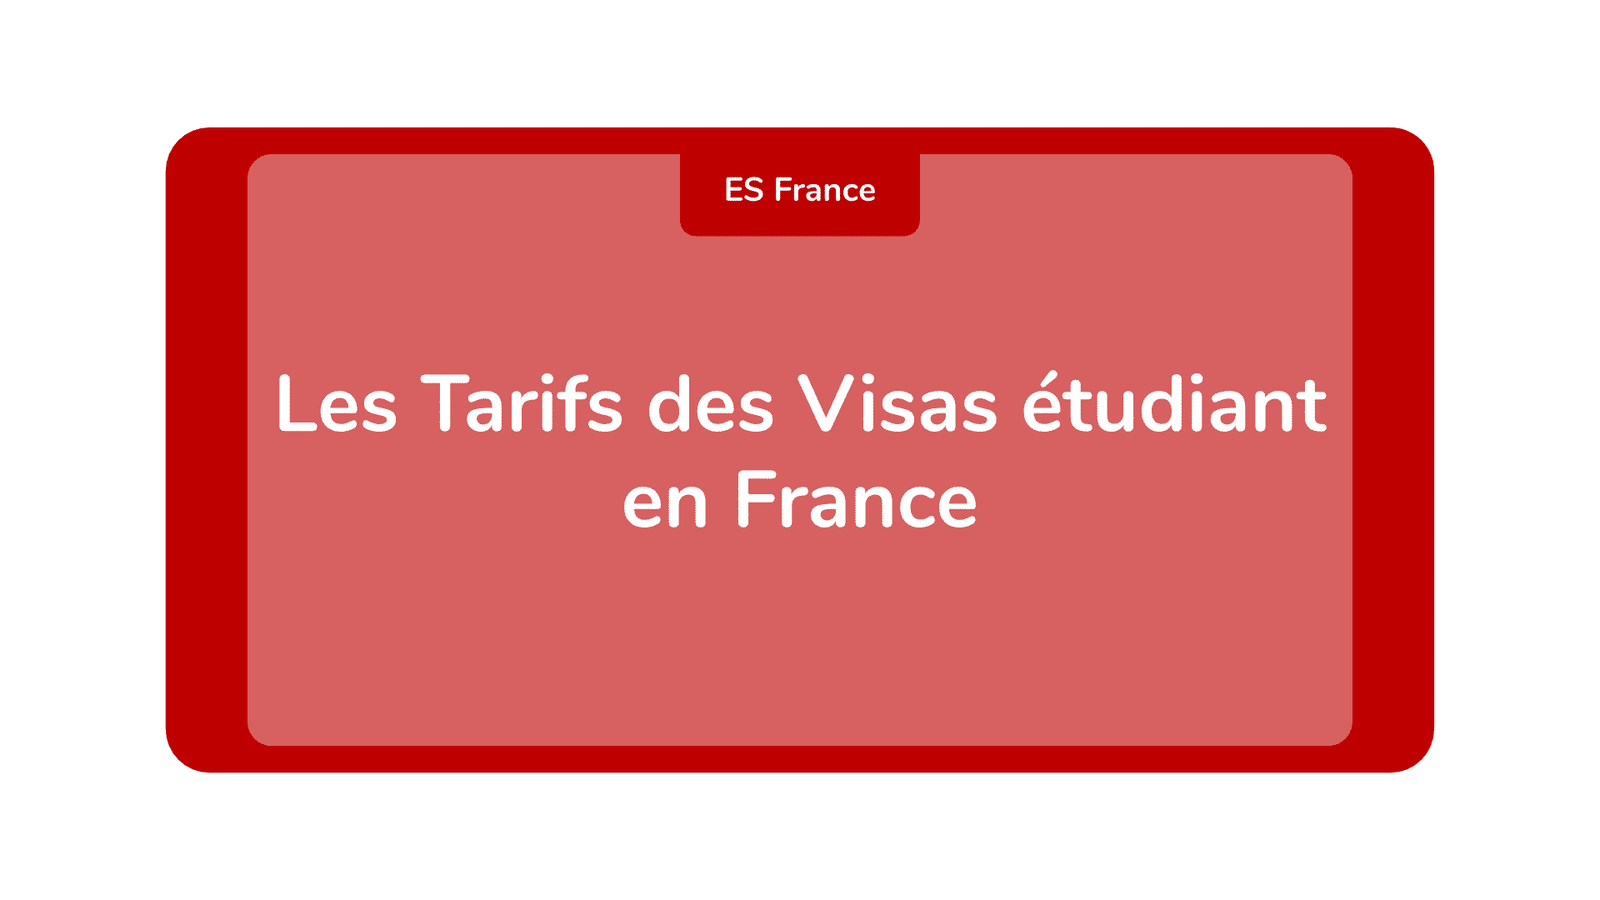 Les Tarifs des Visas étudiant en France